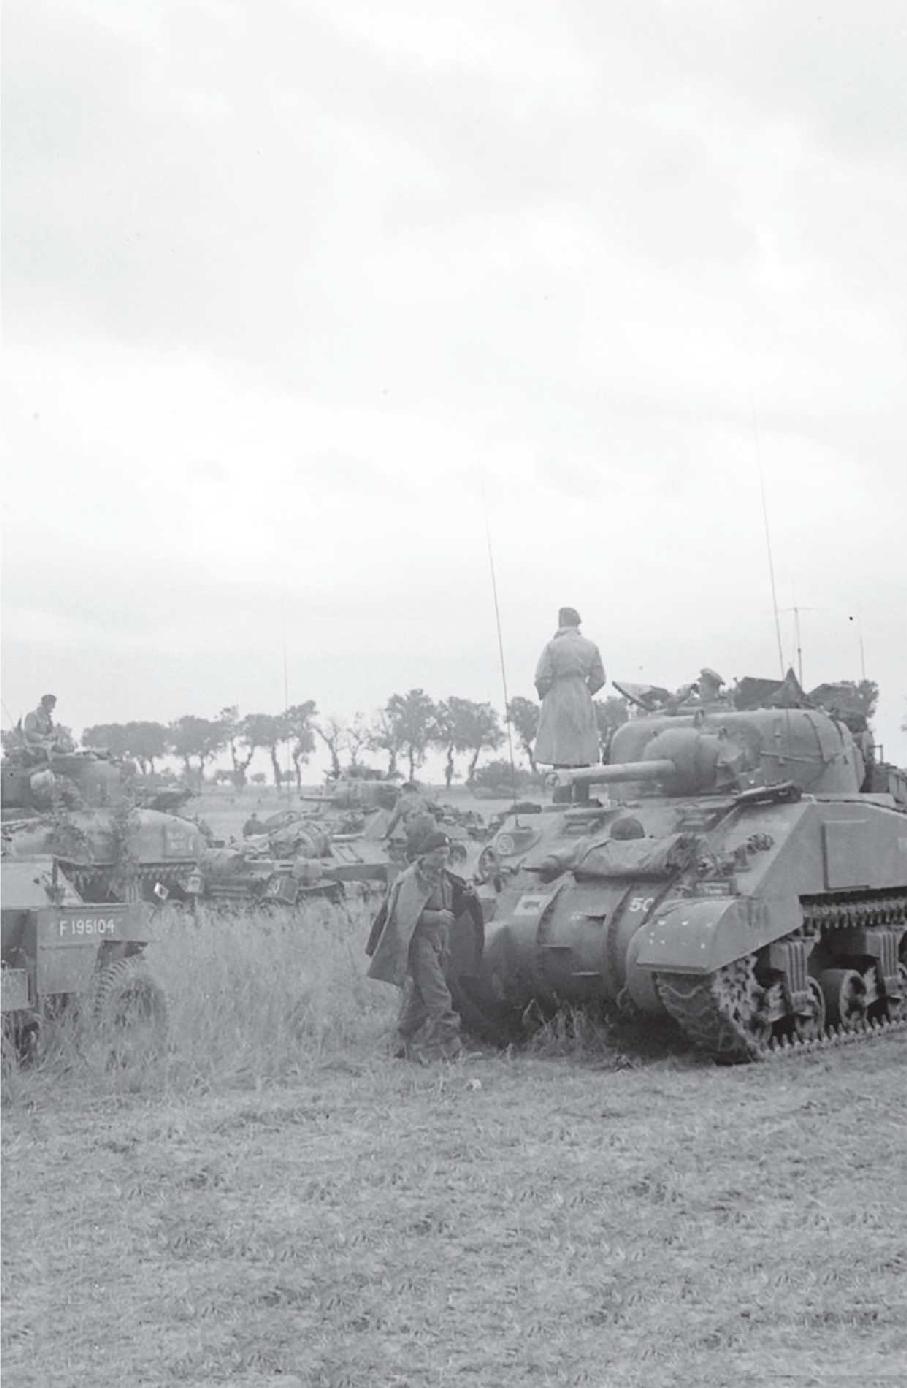 Shermans assembling for Operation EPSOM - photo 29